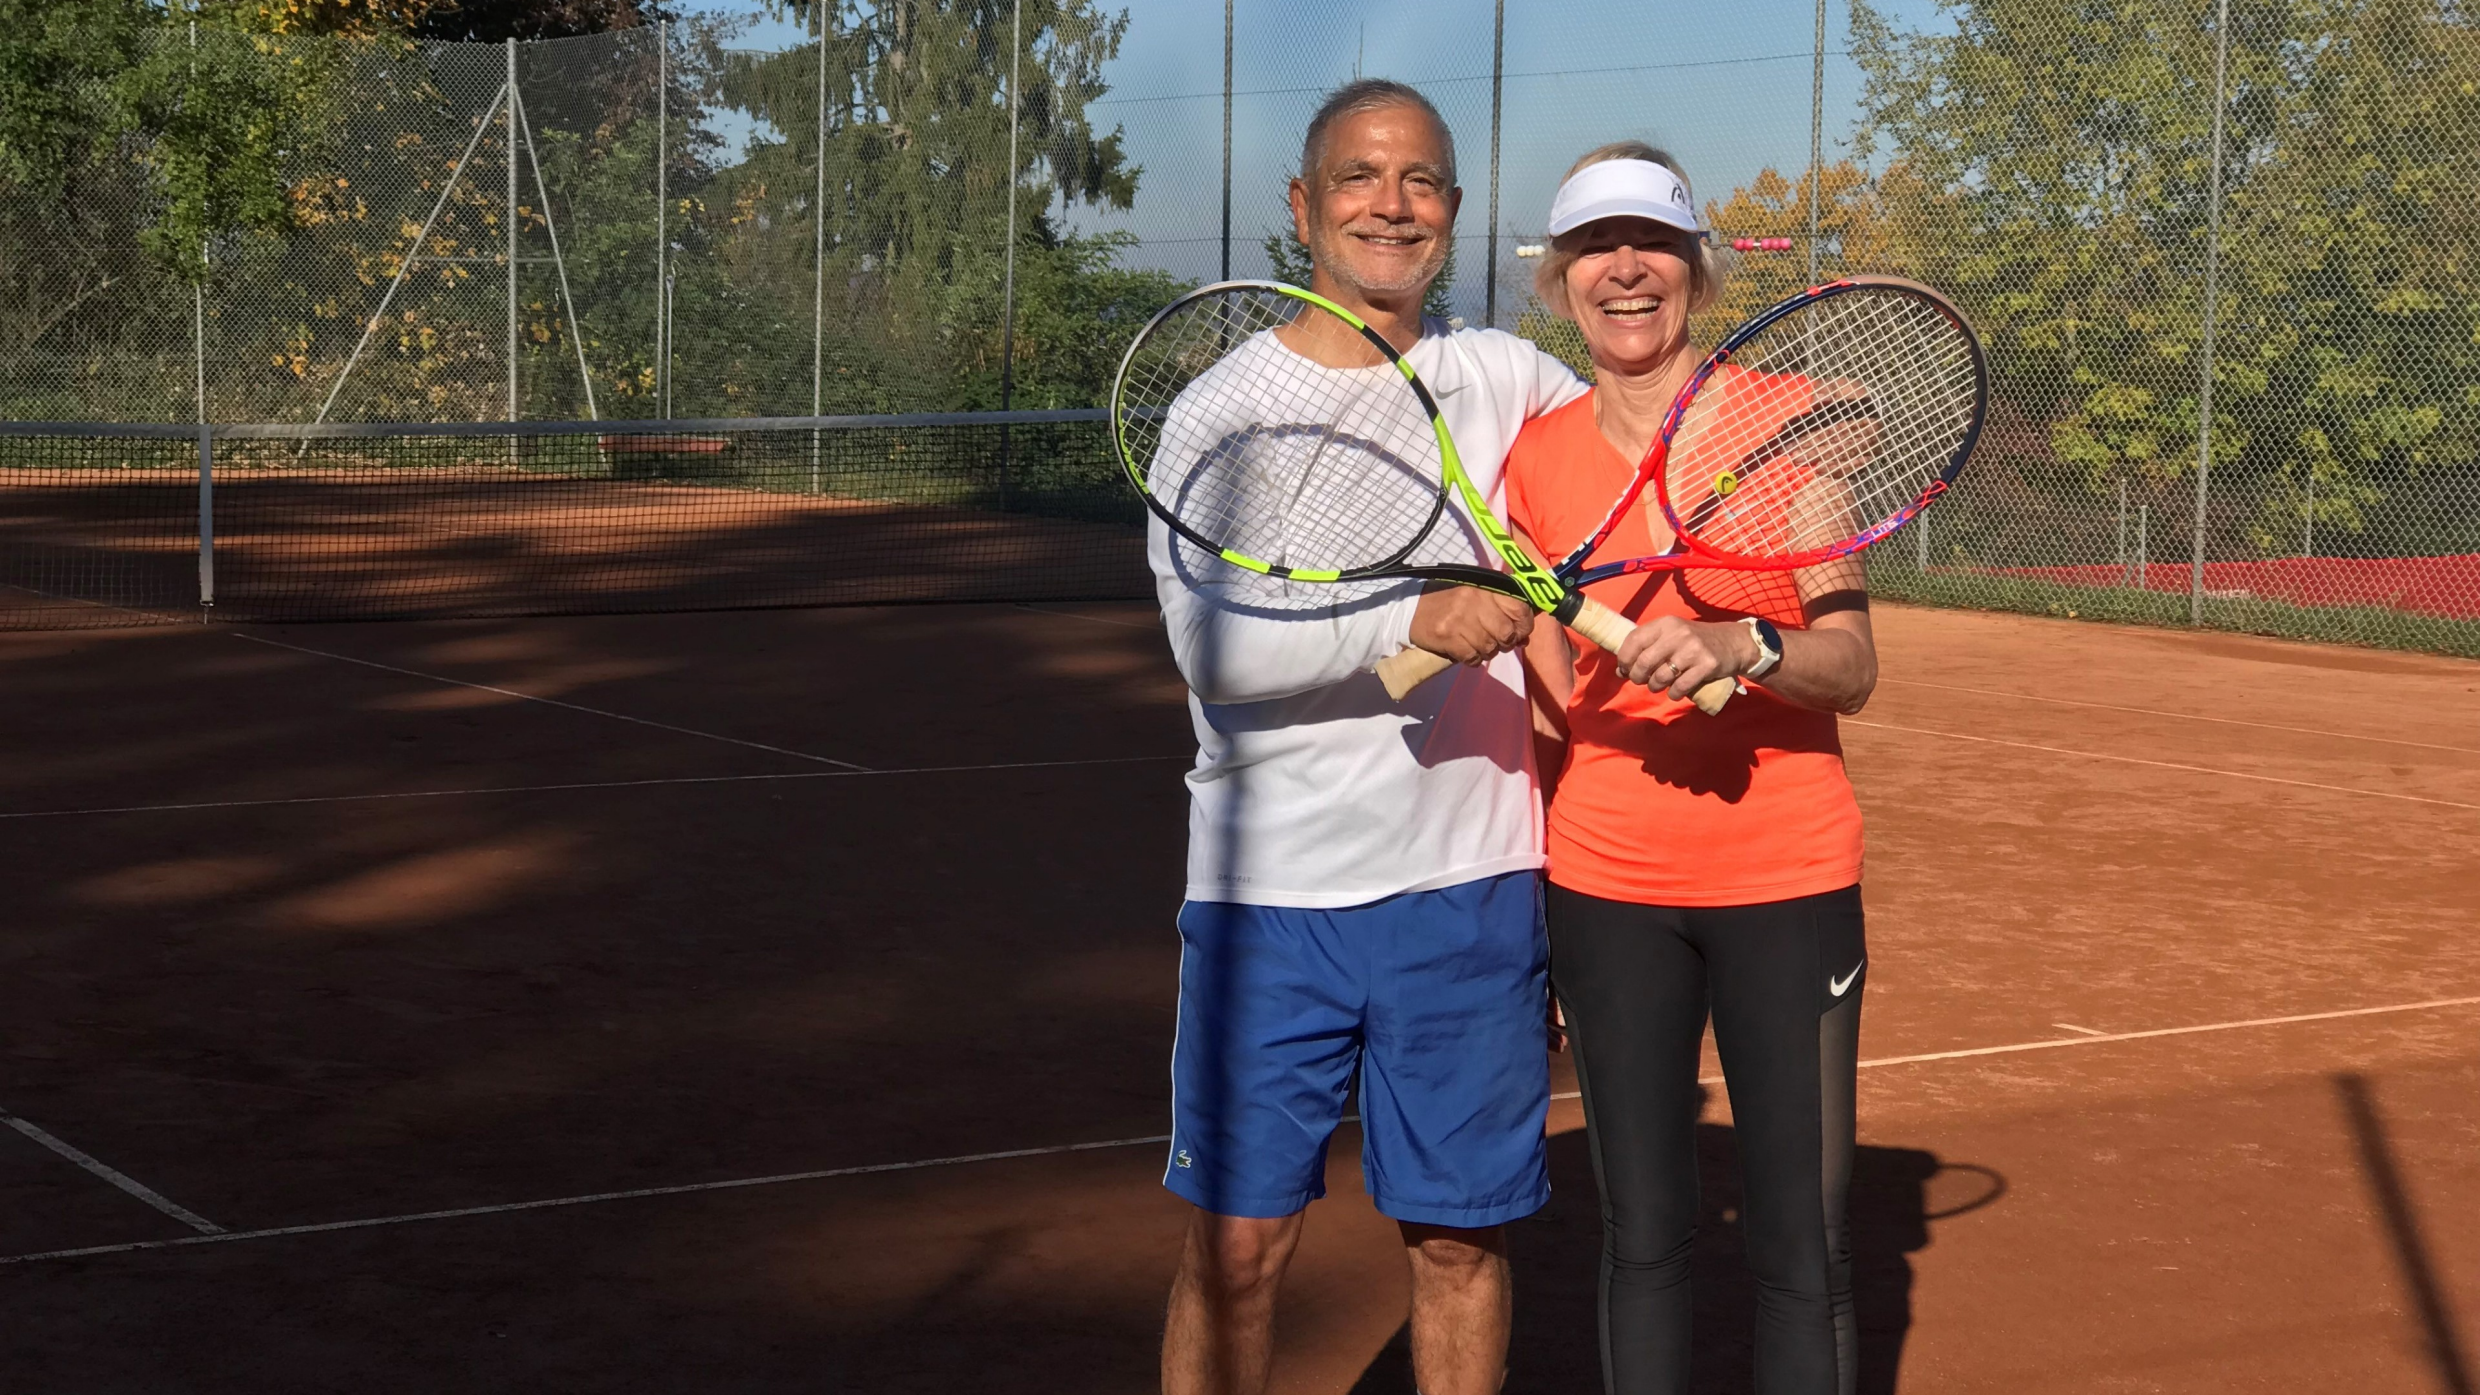 Tennis auf den Courts der städtischen Anlagen des Kantons Zürich